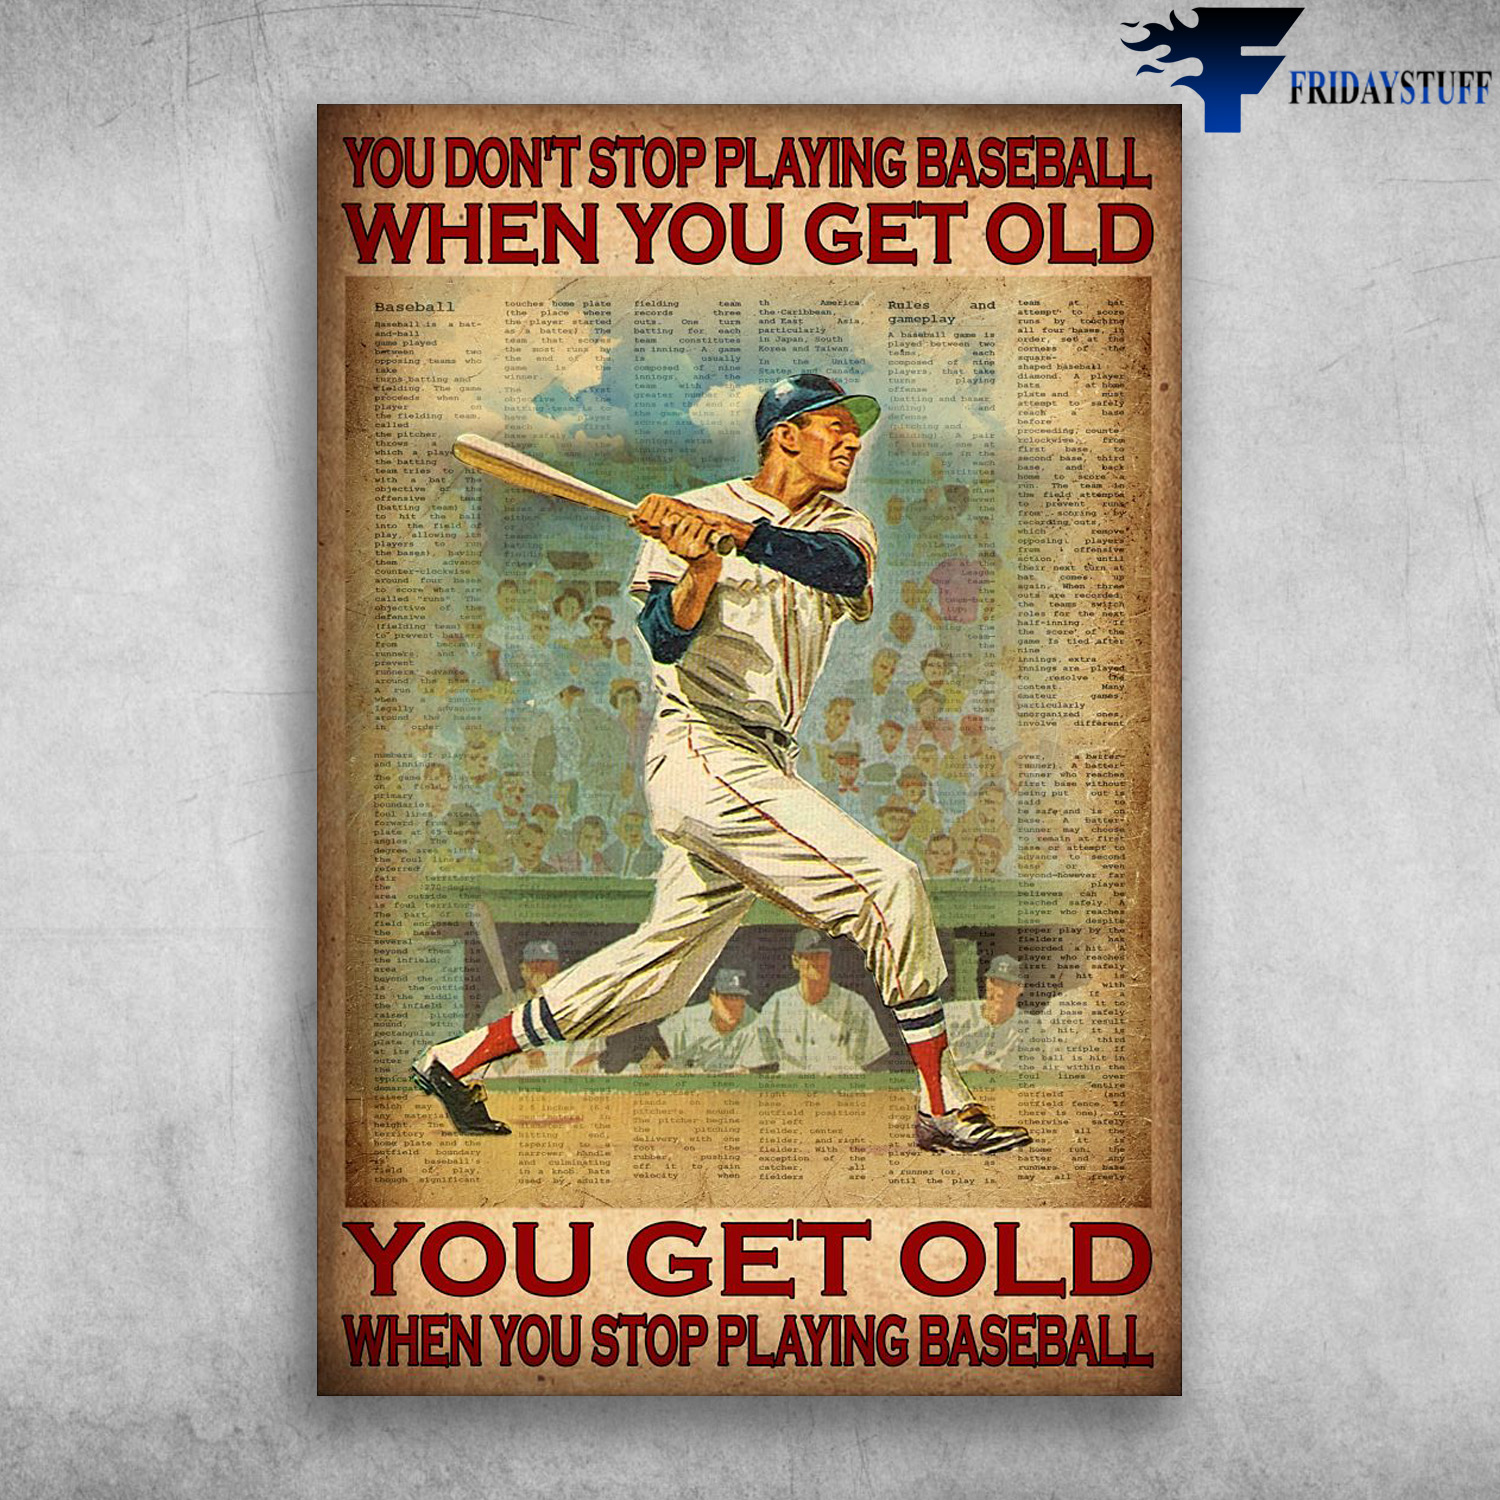 Baseball Player - You Don't Stop Playing Baseball When You Get Old, You Get Old When You Stop Playing Baseball